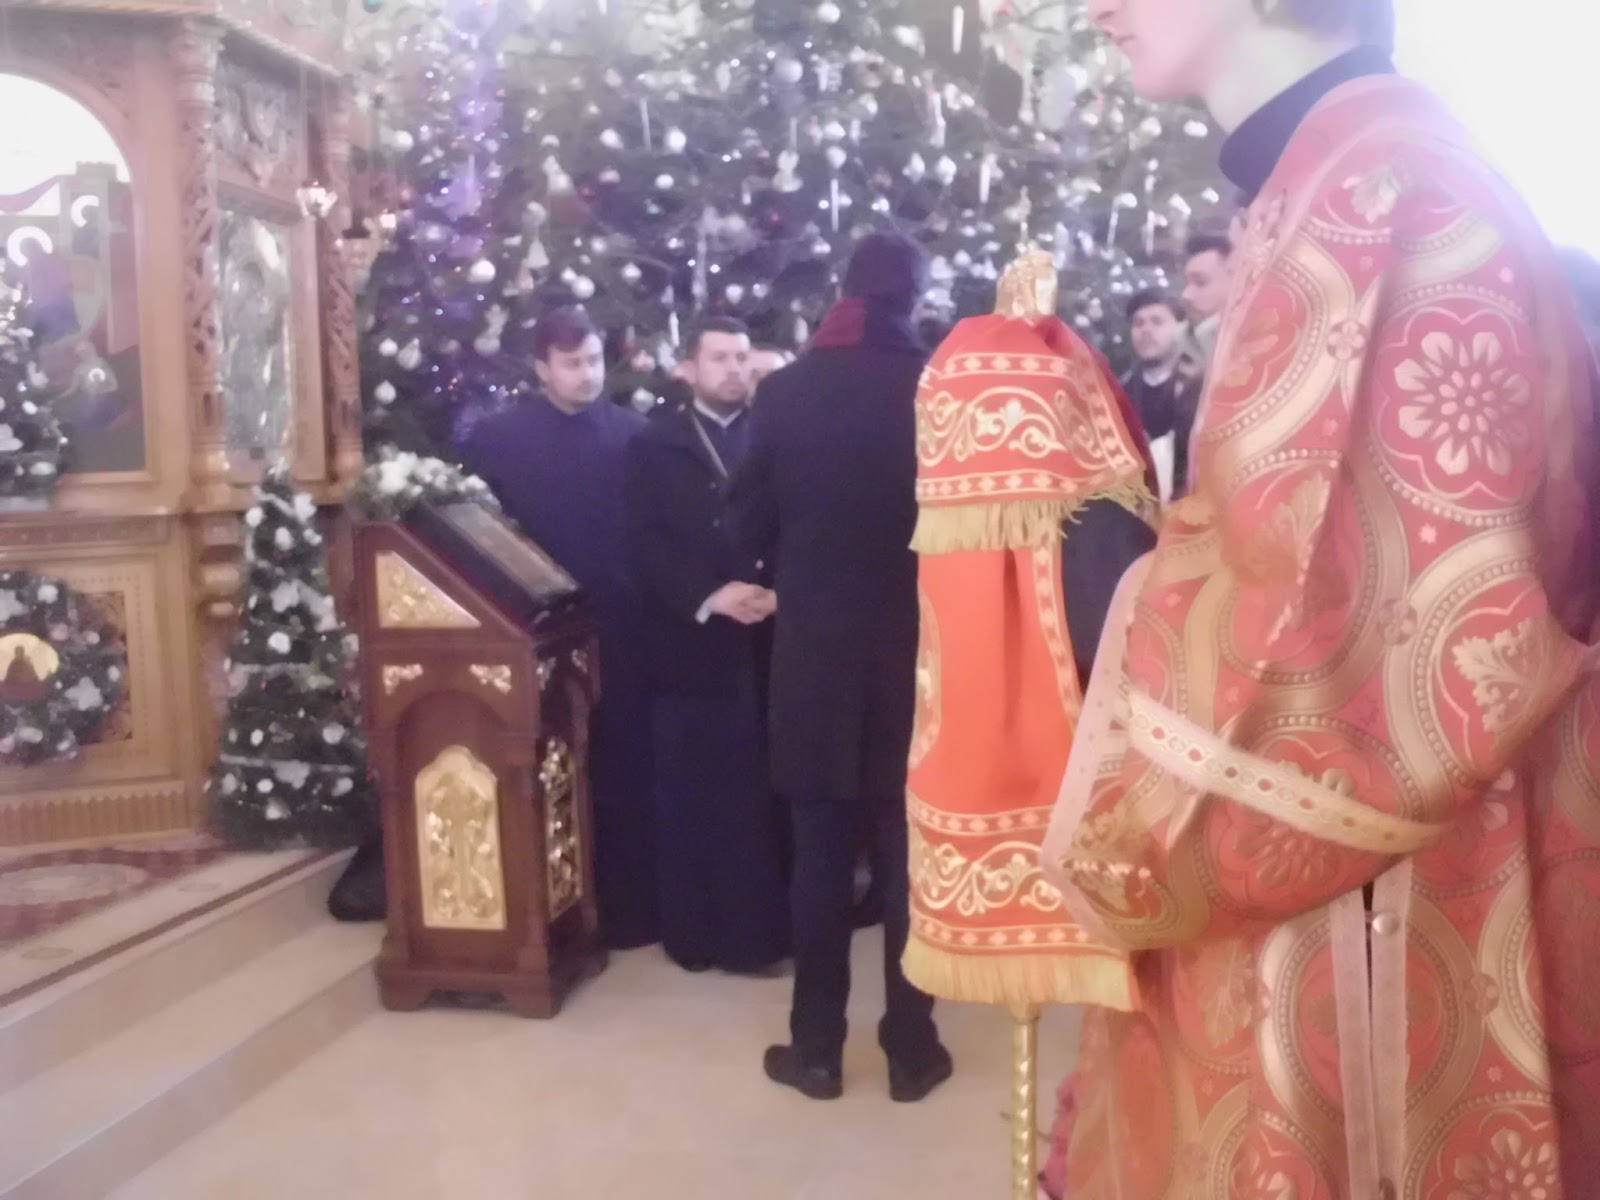 Blog Crestin Ortodox A Treia Zi De Craciun La Manastirea Boian Ianuarie